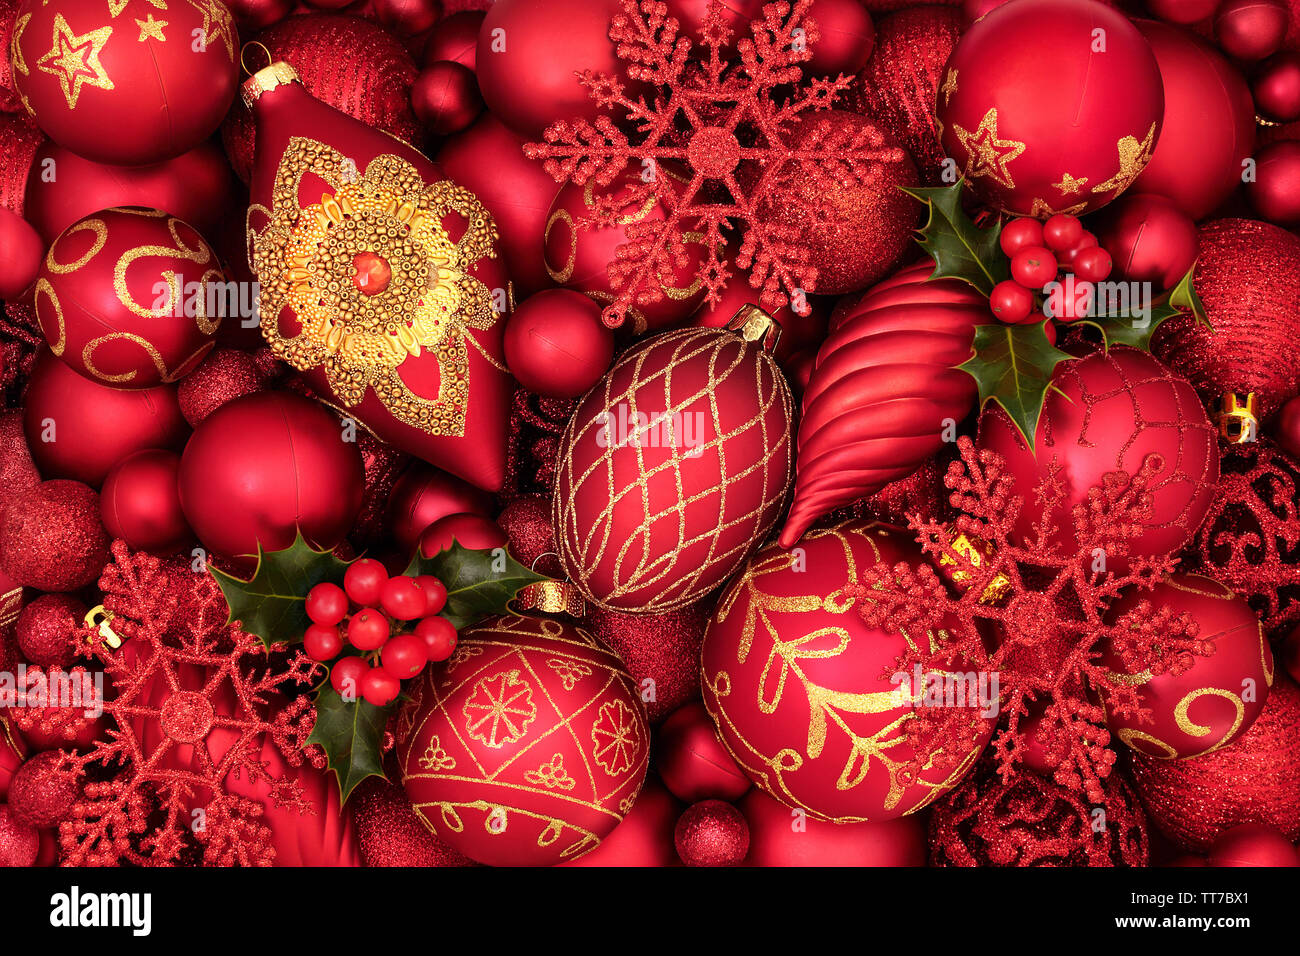 Holly d'hiver et l'arbre de Noël décorations babiole formant un motif de fond. Thème Traditionnel avec des symboles pour la période des fêtes. Banque D'Images